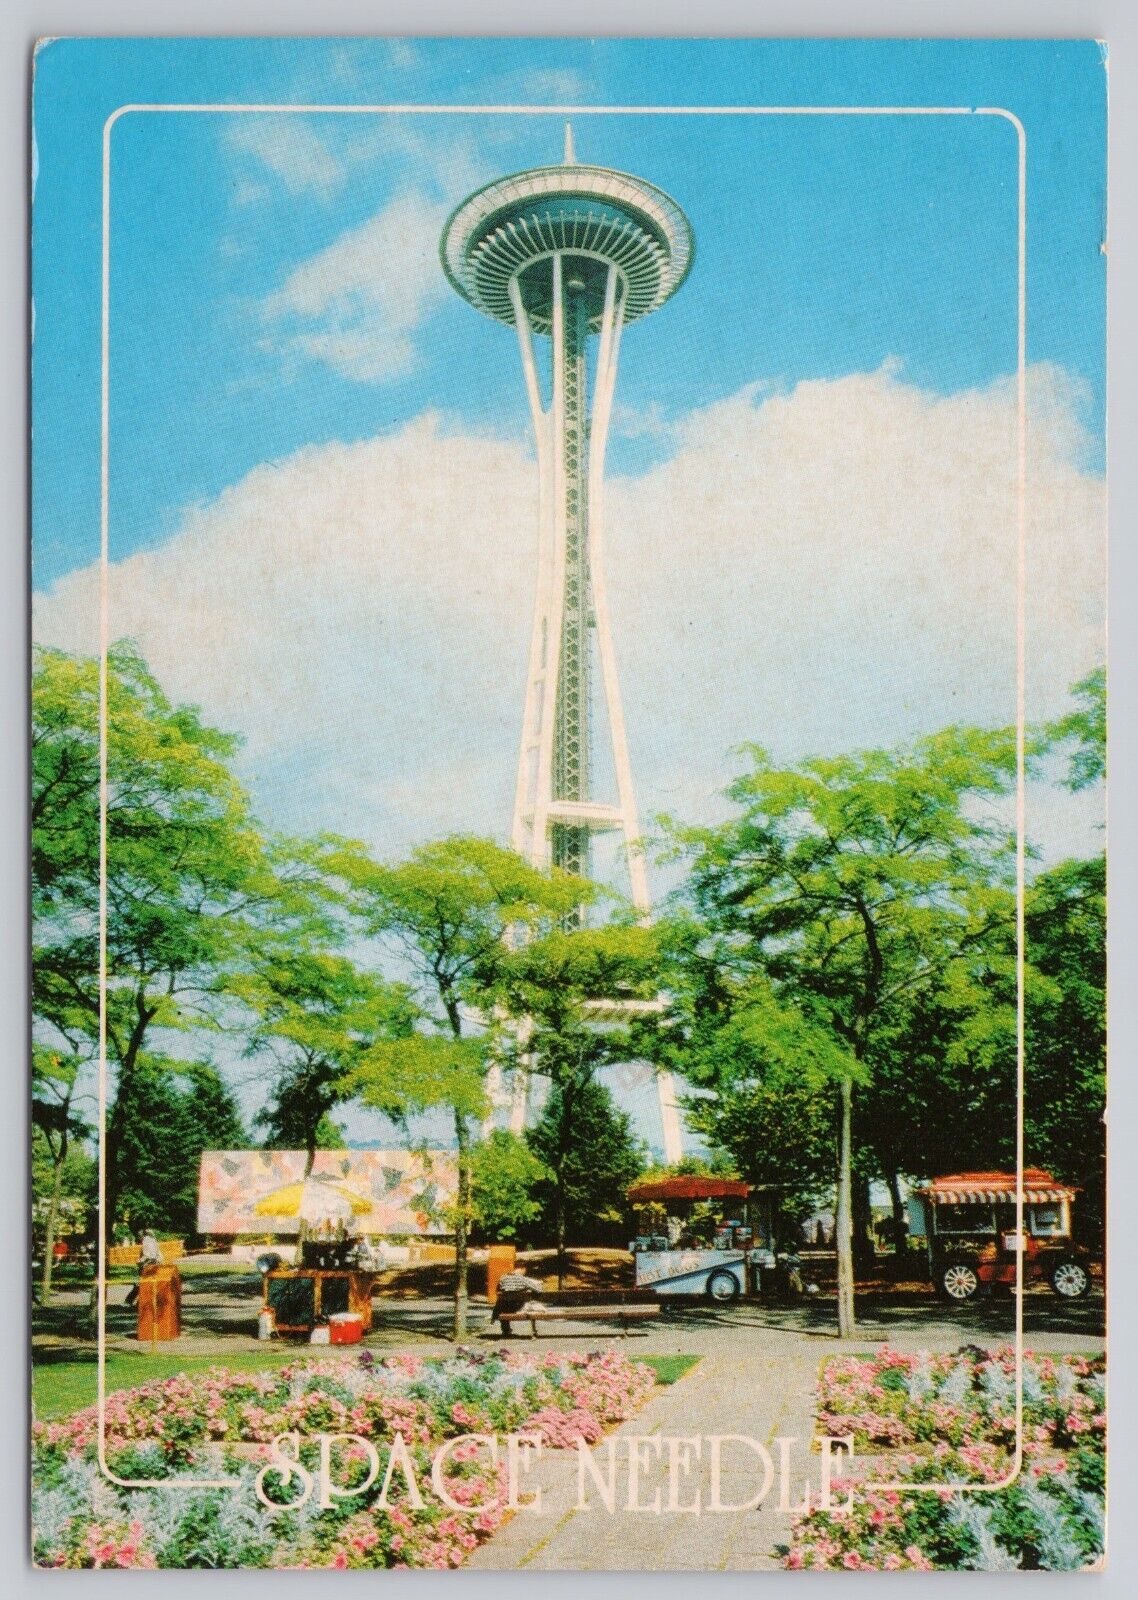 Seattle Washington, Space Needle, Food Trucks, Vintage Postcard